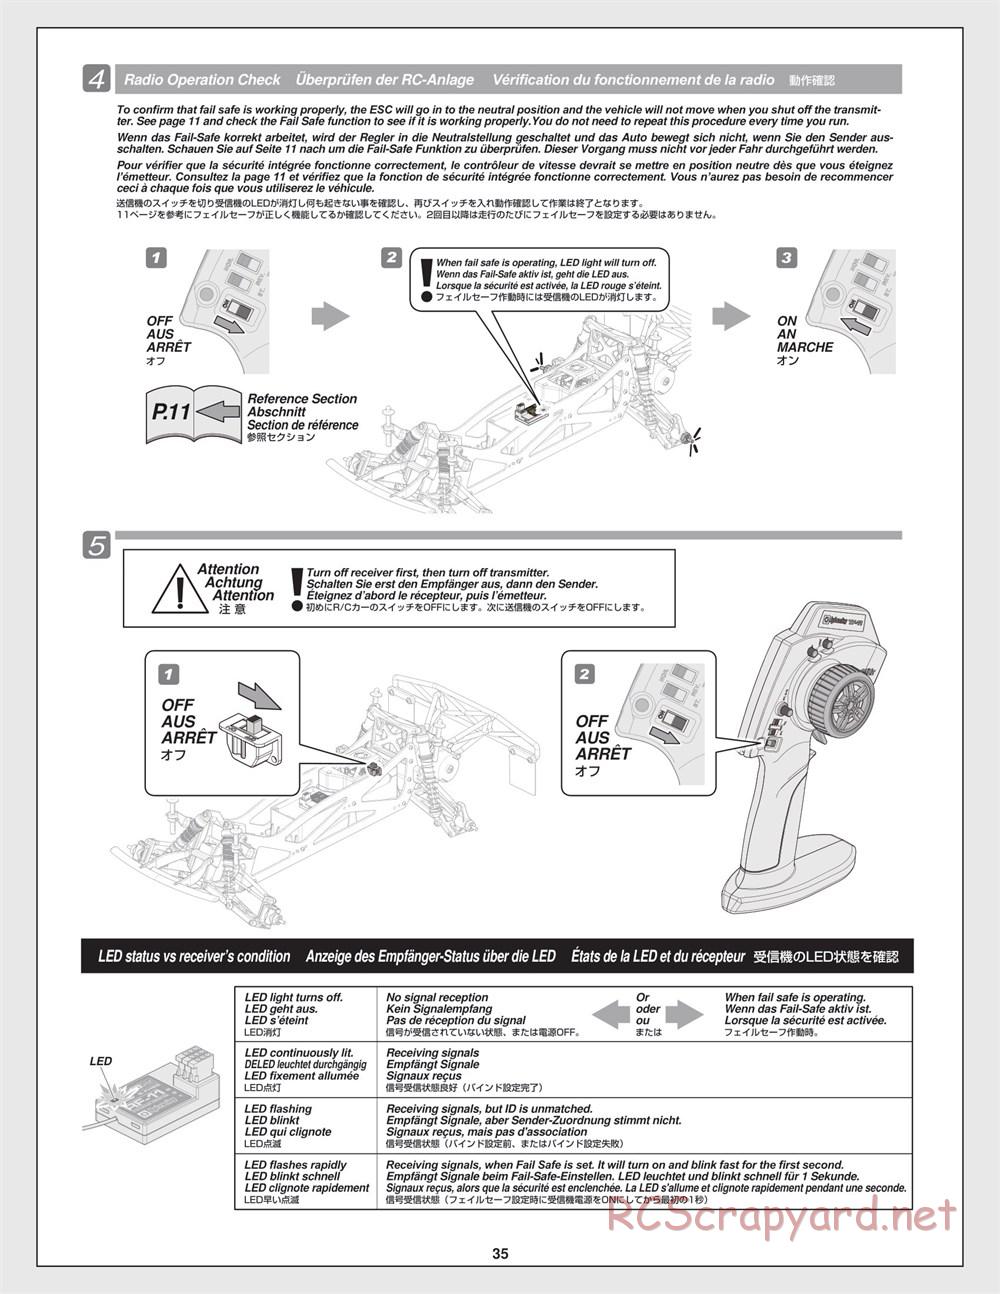 HPI - Jumpshot SC - Manual - Page 35